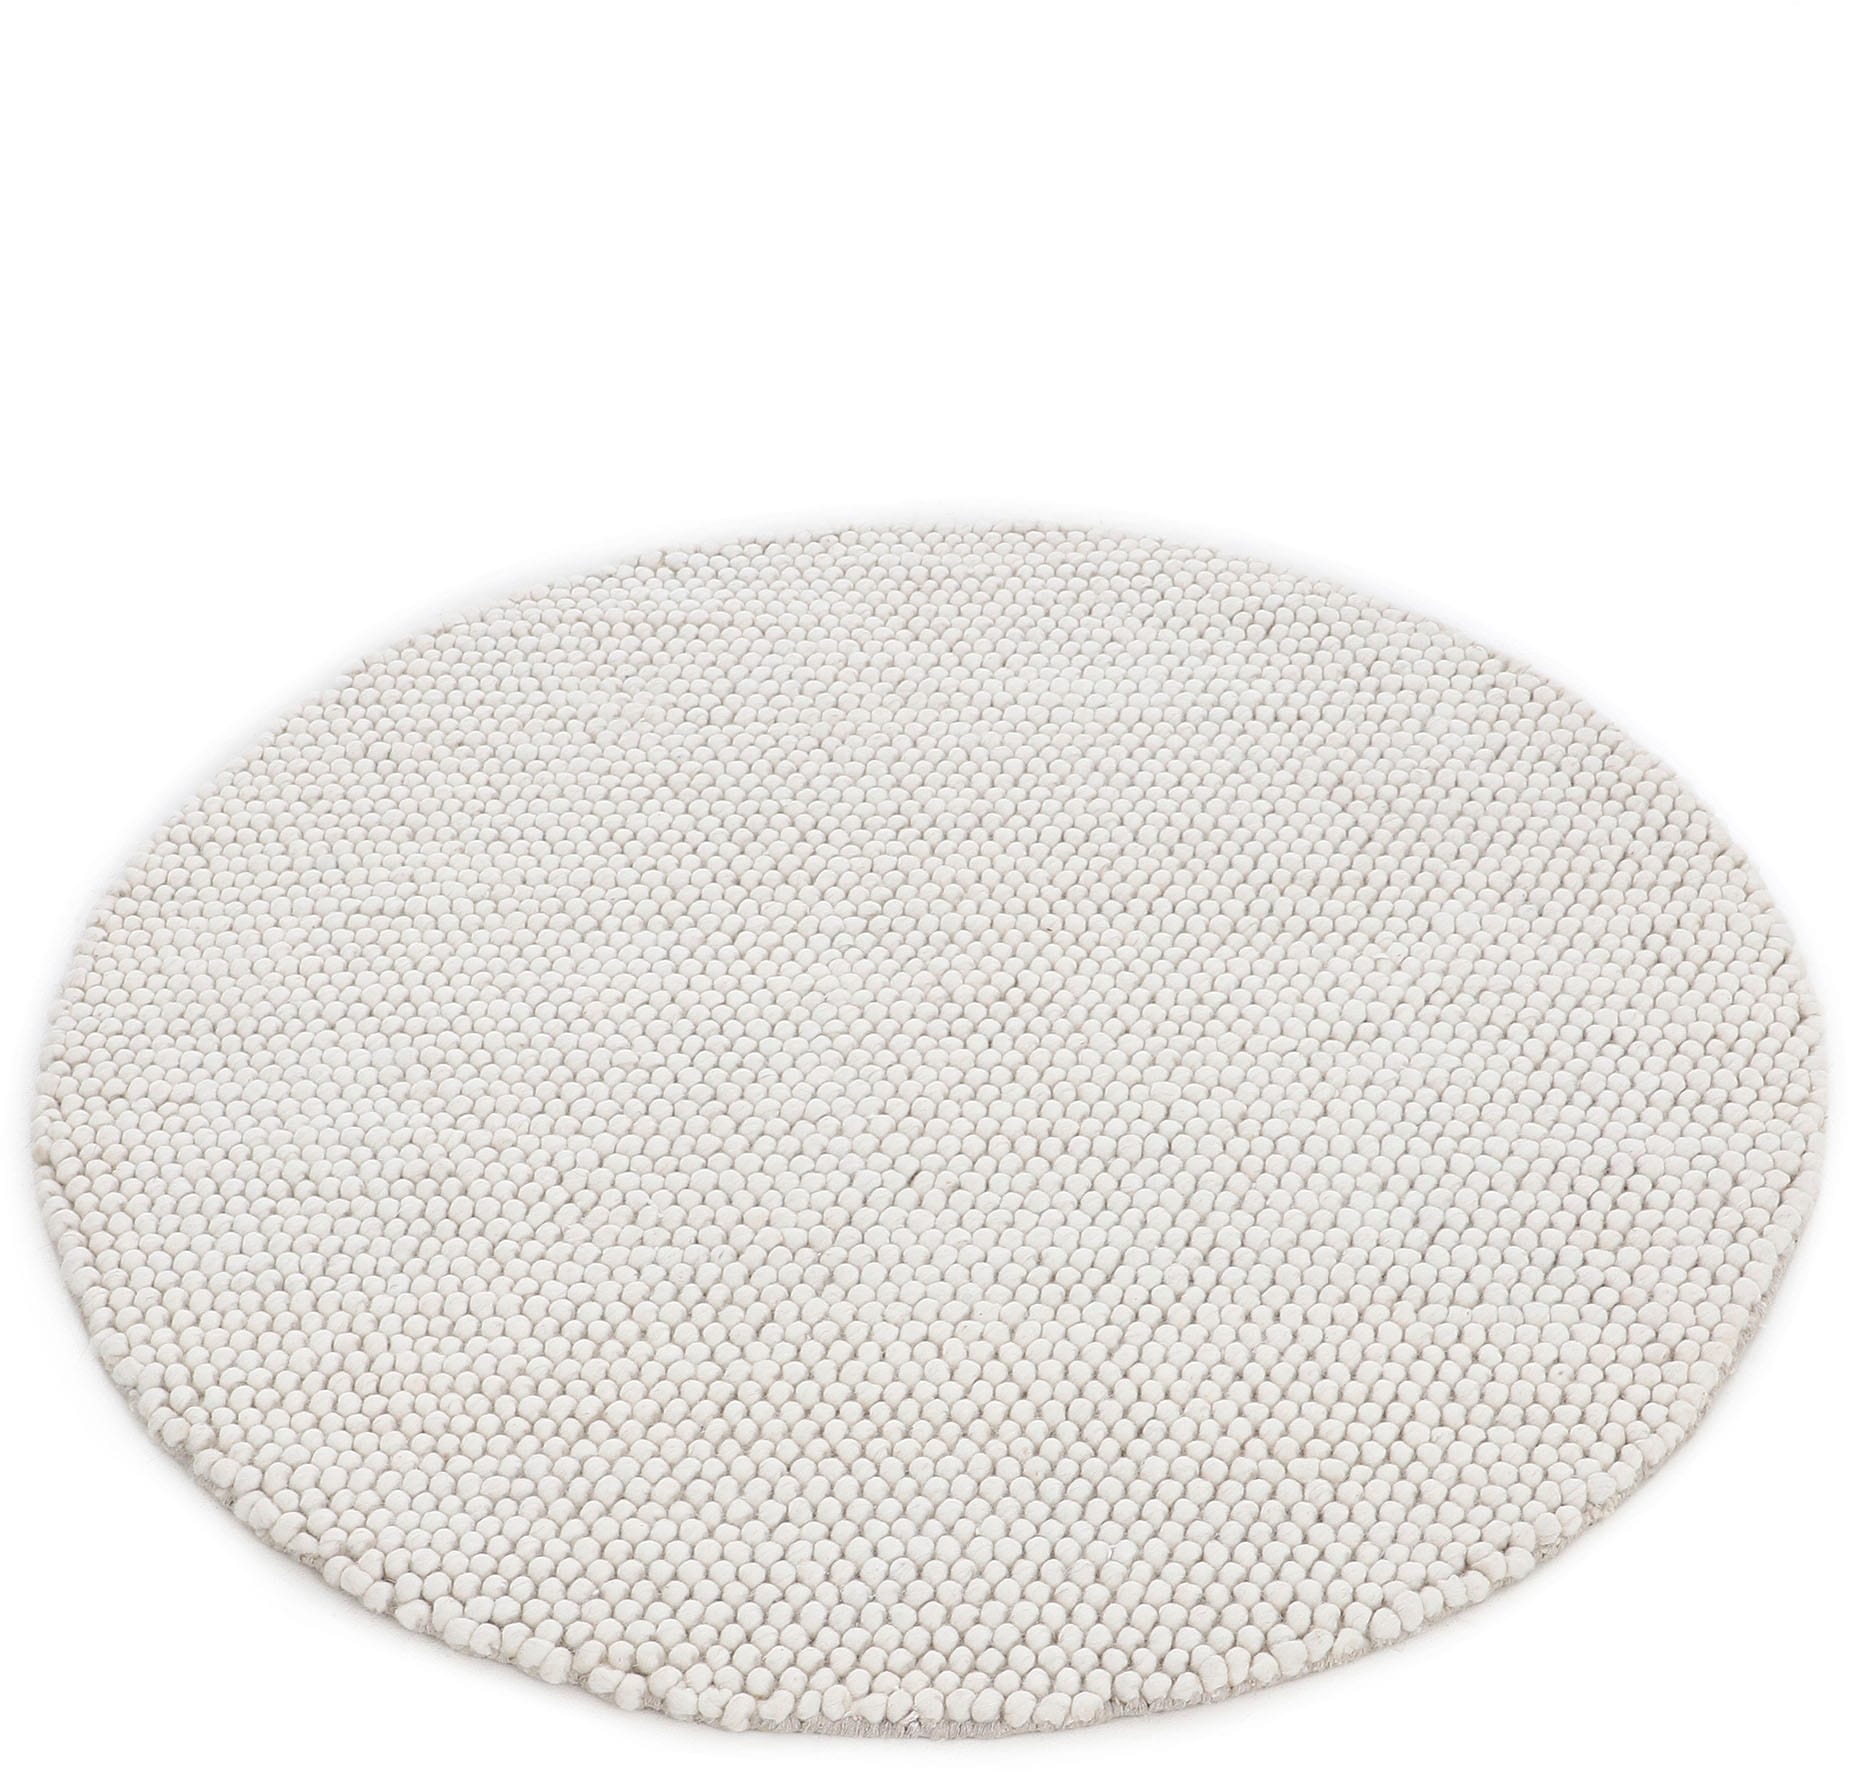 carpetfine Teppich »Calo«, 70% Handweb acheter Teppich, Uni-Farben, handgewebt, confortablement Wolle rund, meliert